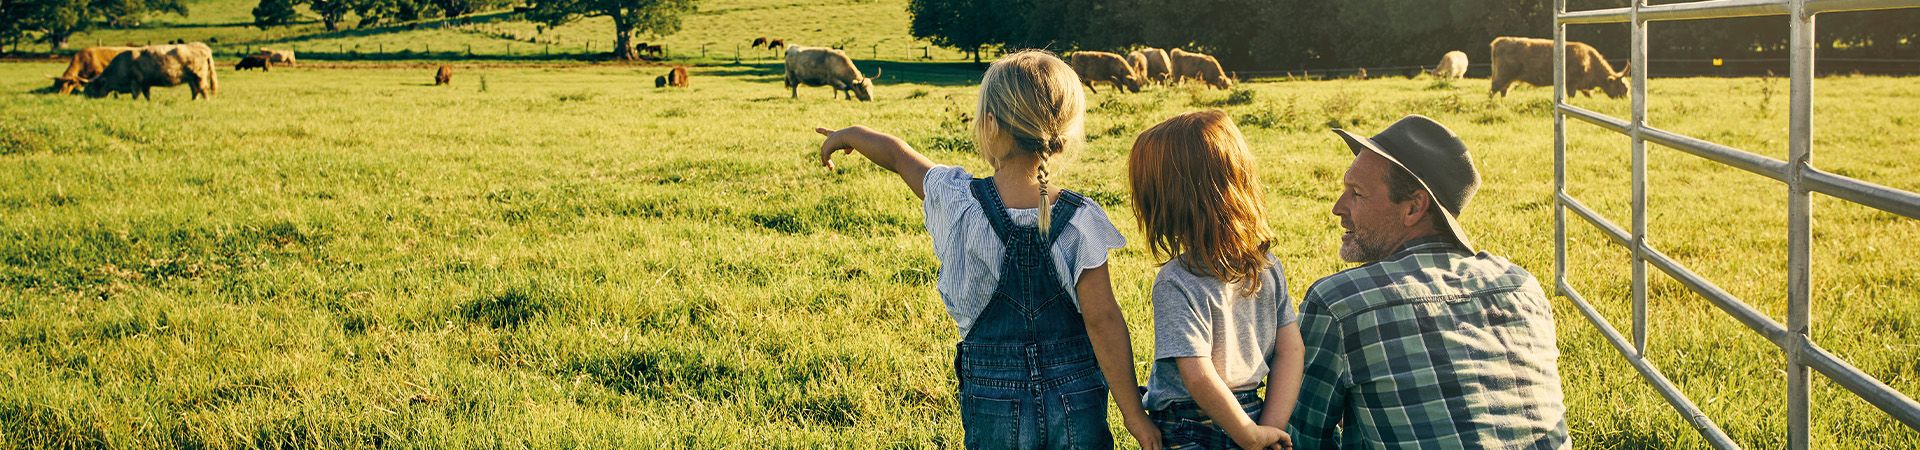  Vacanze nella natura con bambini: un papà osserva con i bambini le mucche di una fattoria.